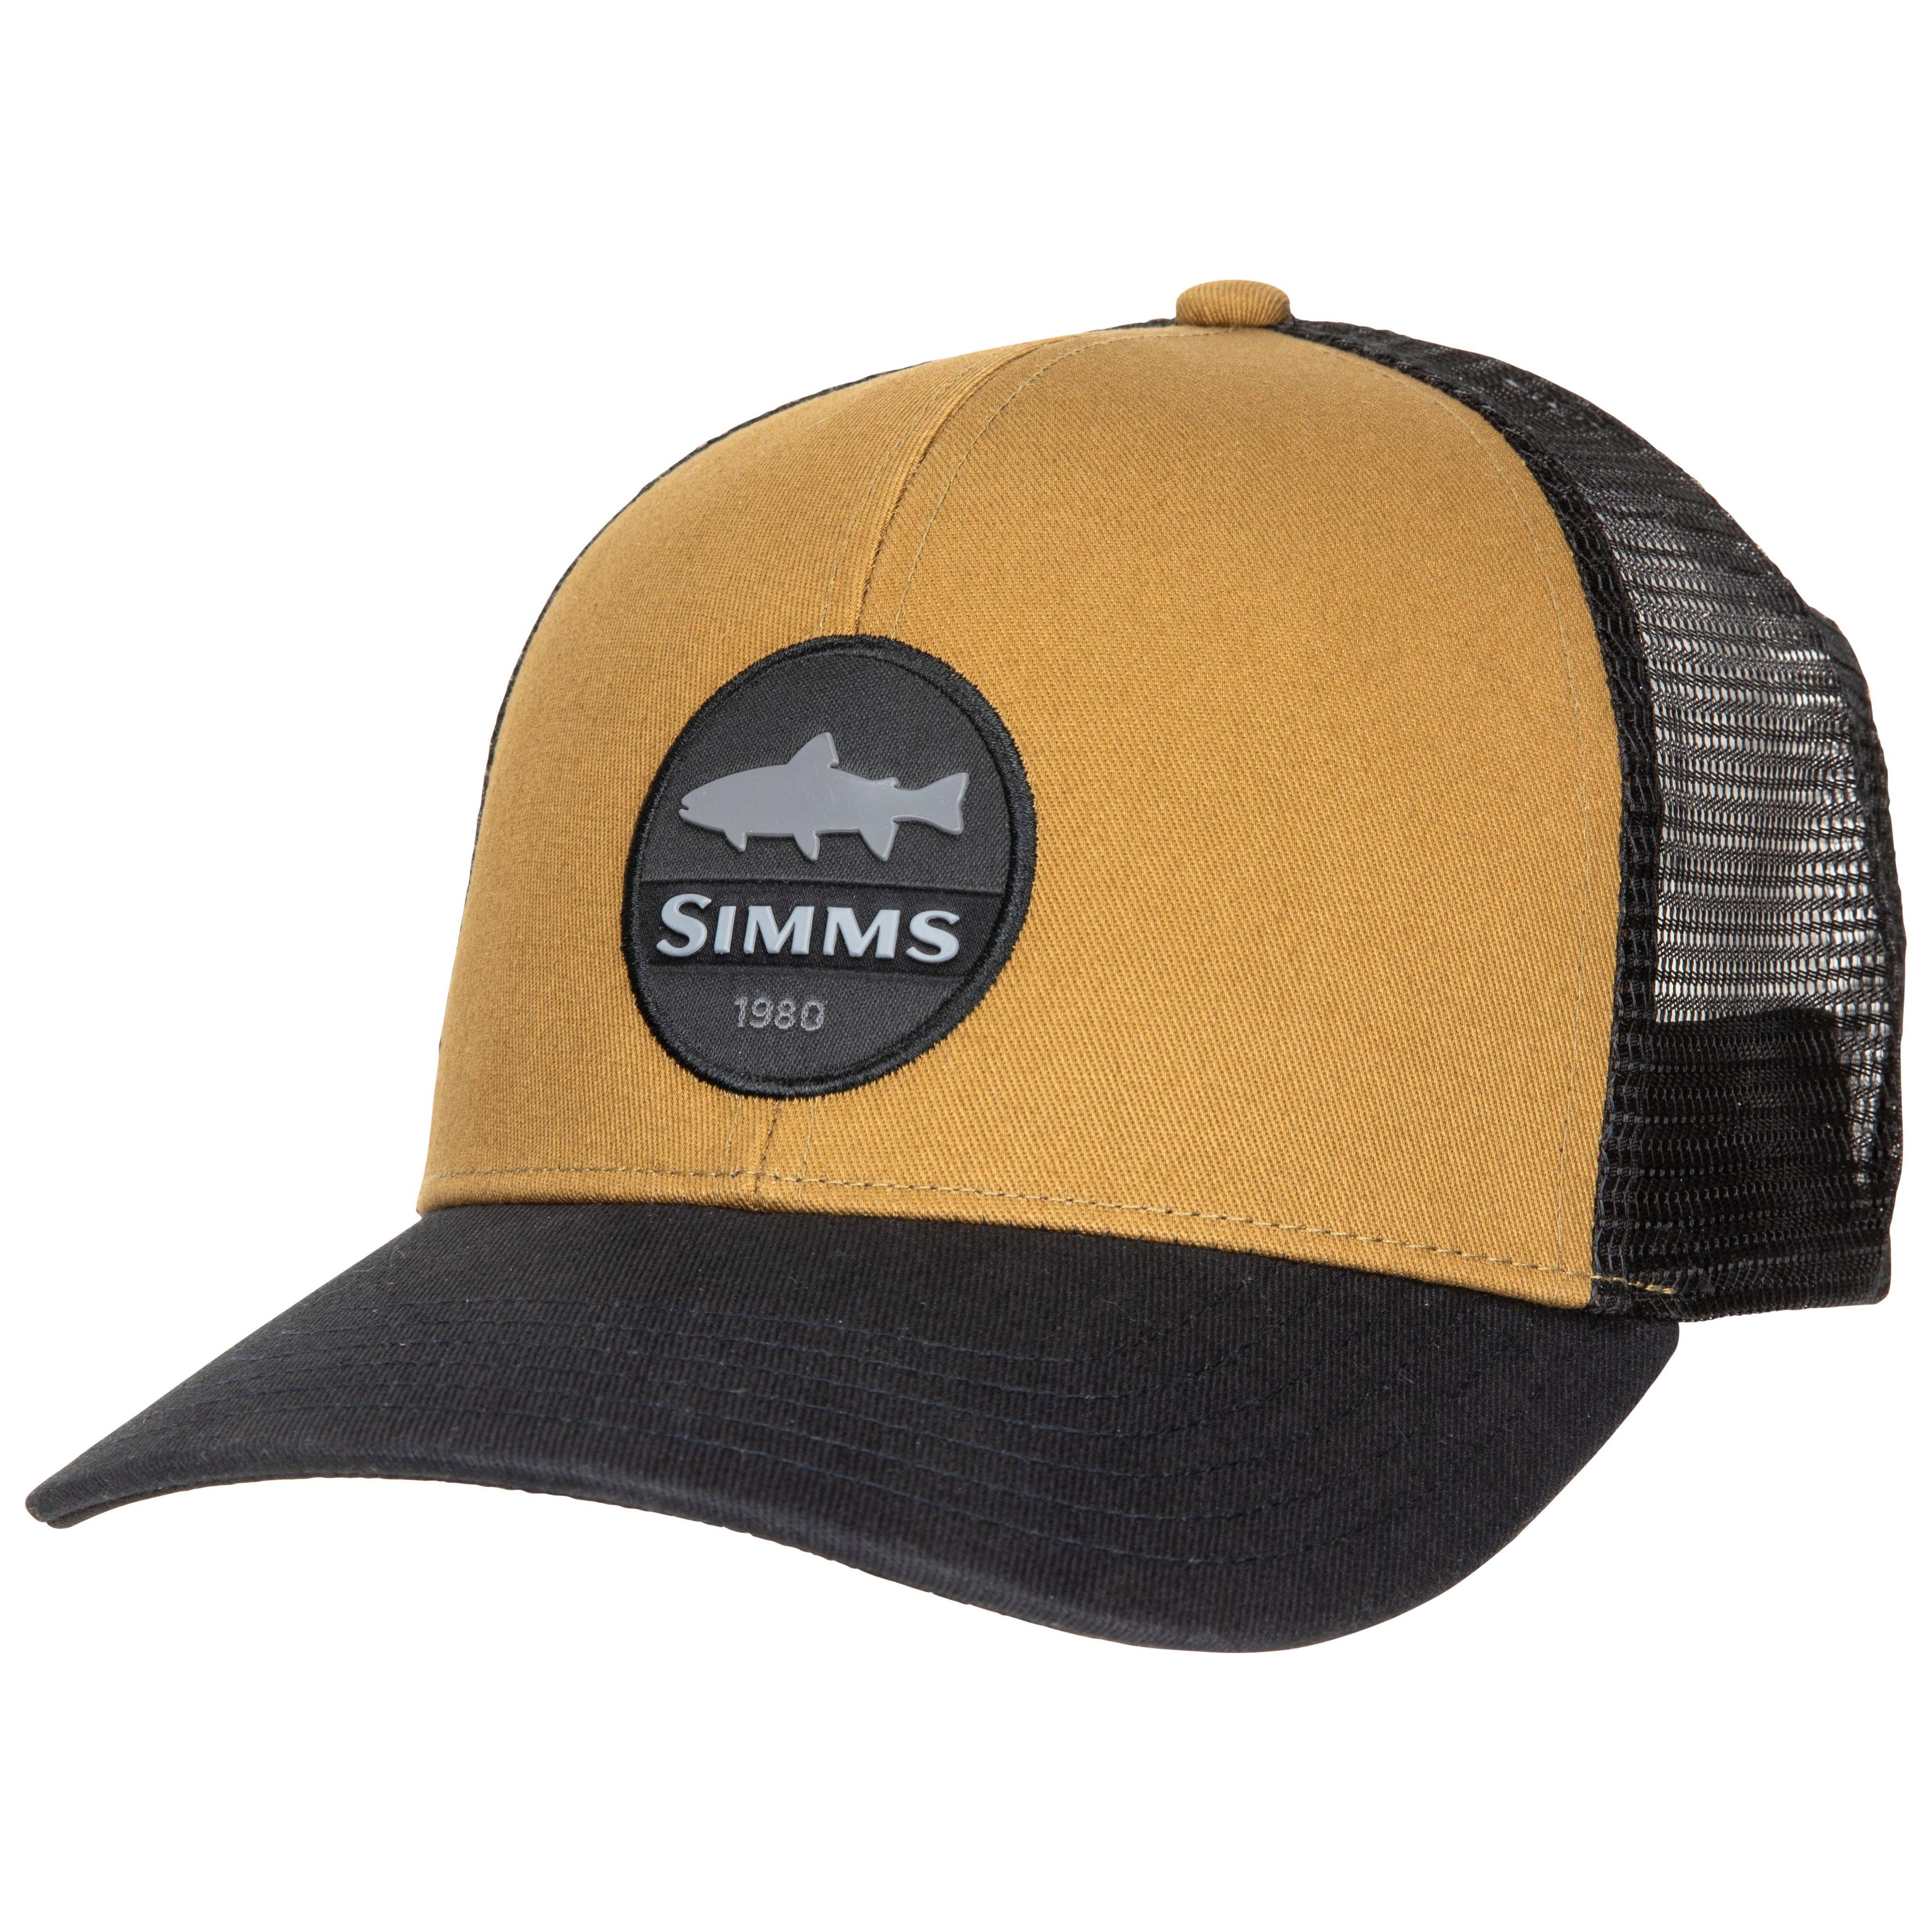 Simms Trout Patch Trucker Hat - Dark Bronze